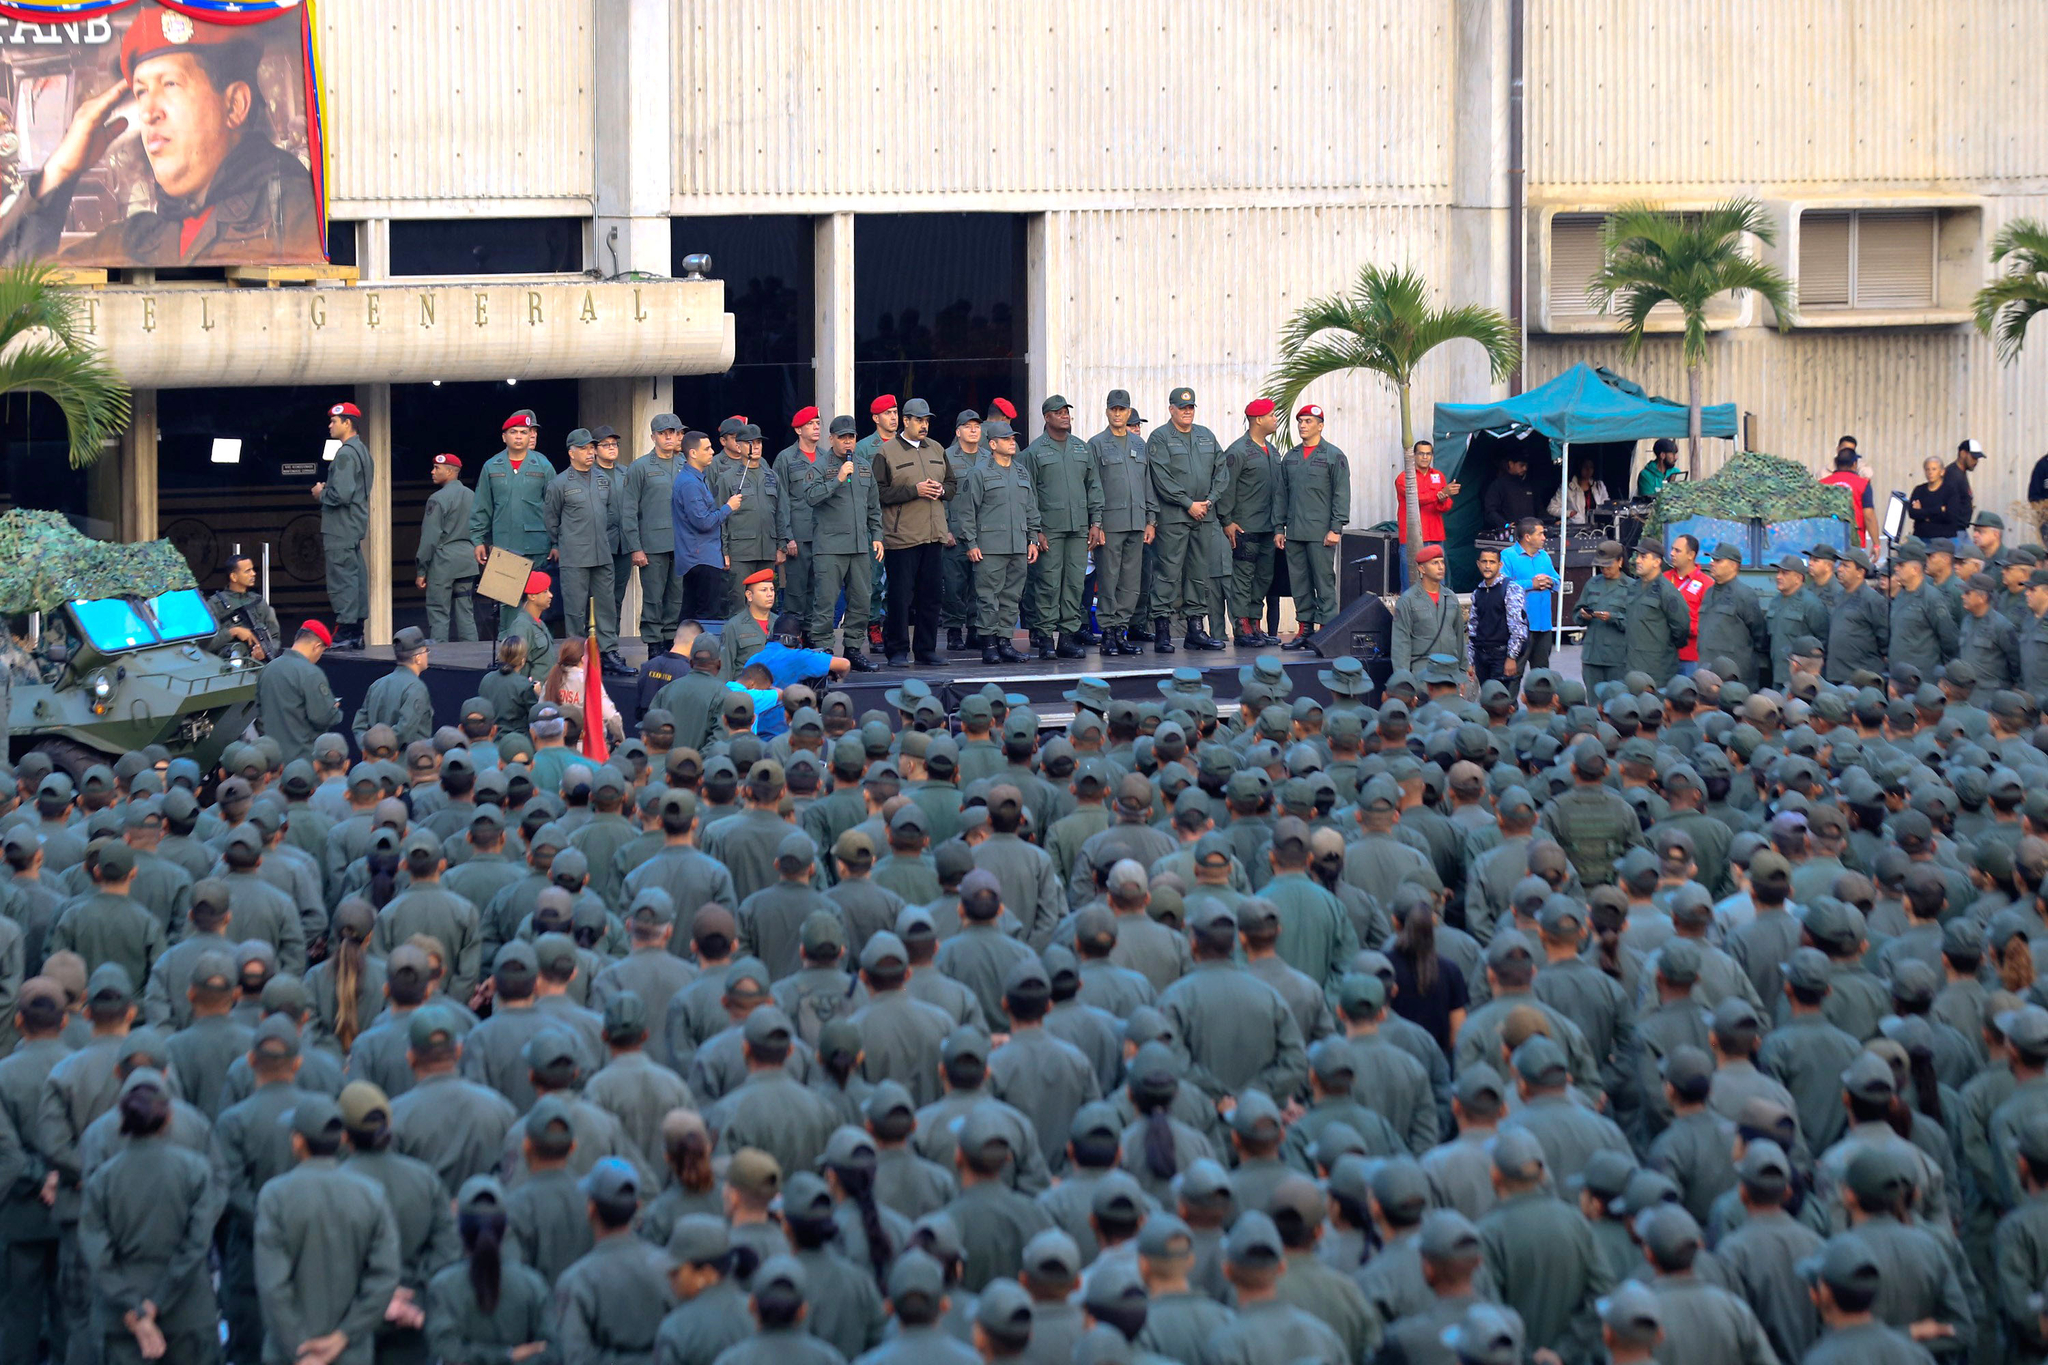 마두로 대통령이 서 있는 연단 옆으로 위장막에 가려진 장갑차와 중무장 군인들이 보인다.[EPA=연합뉴스]